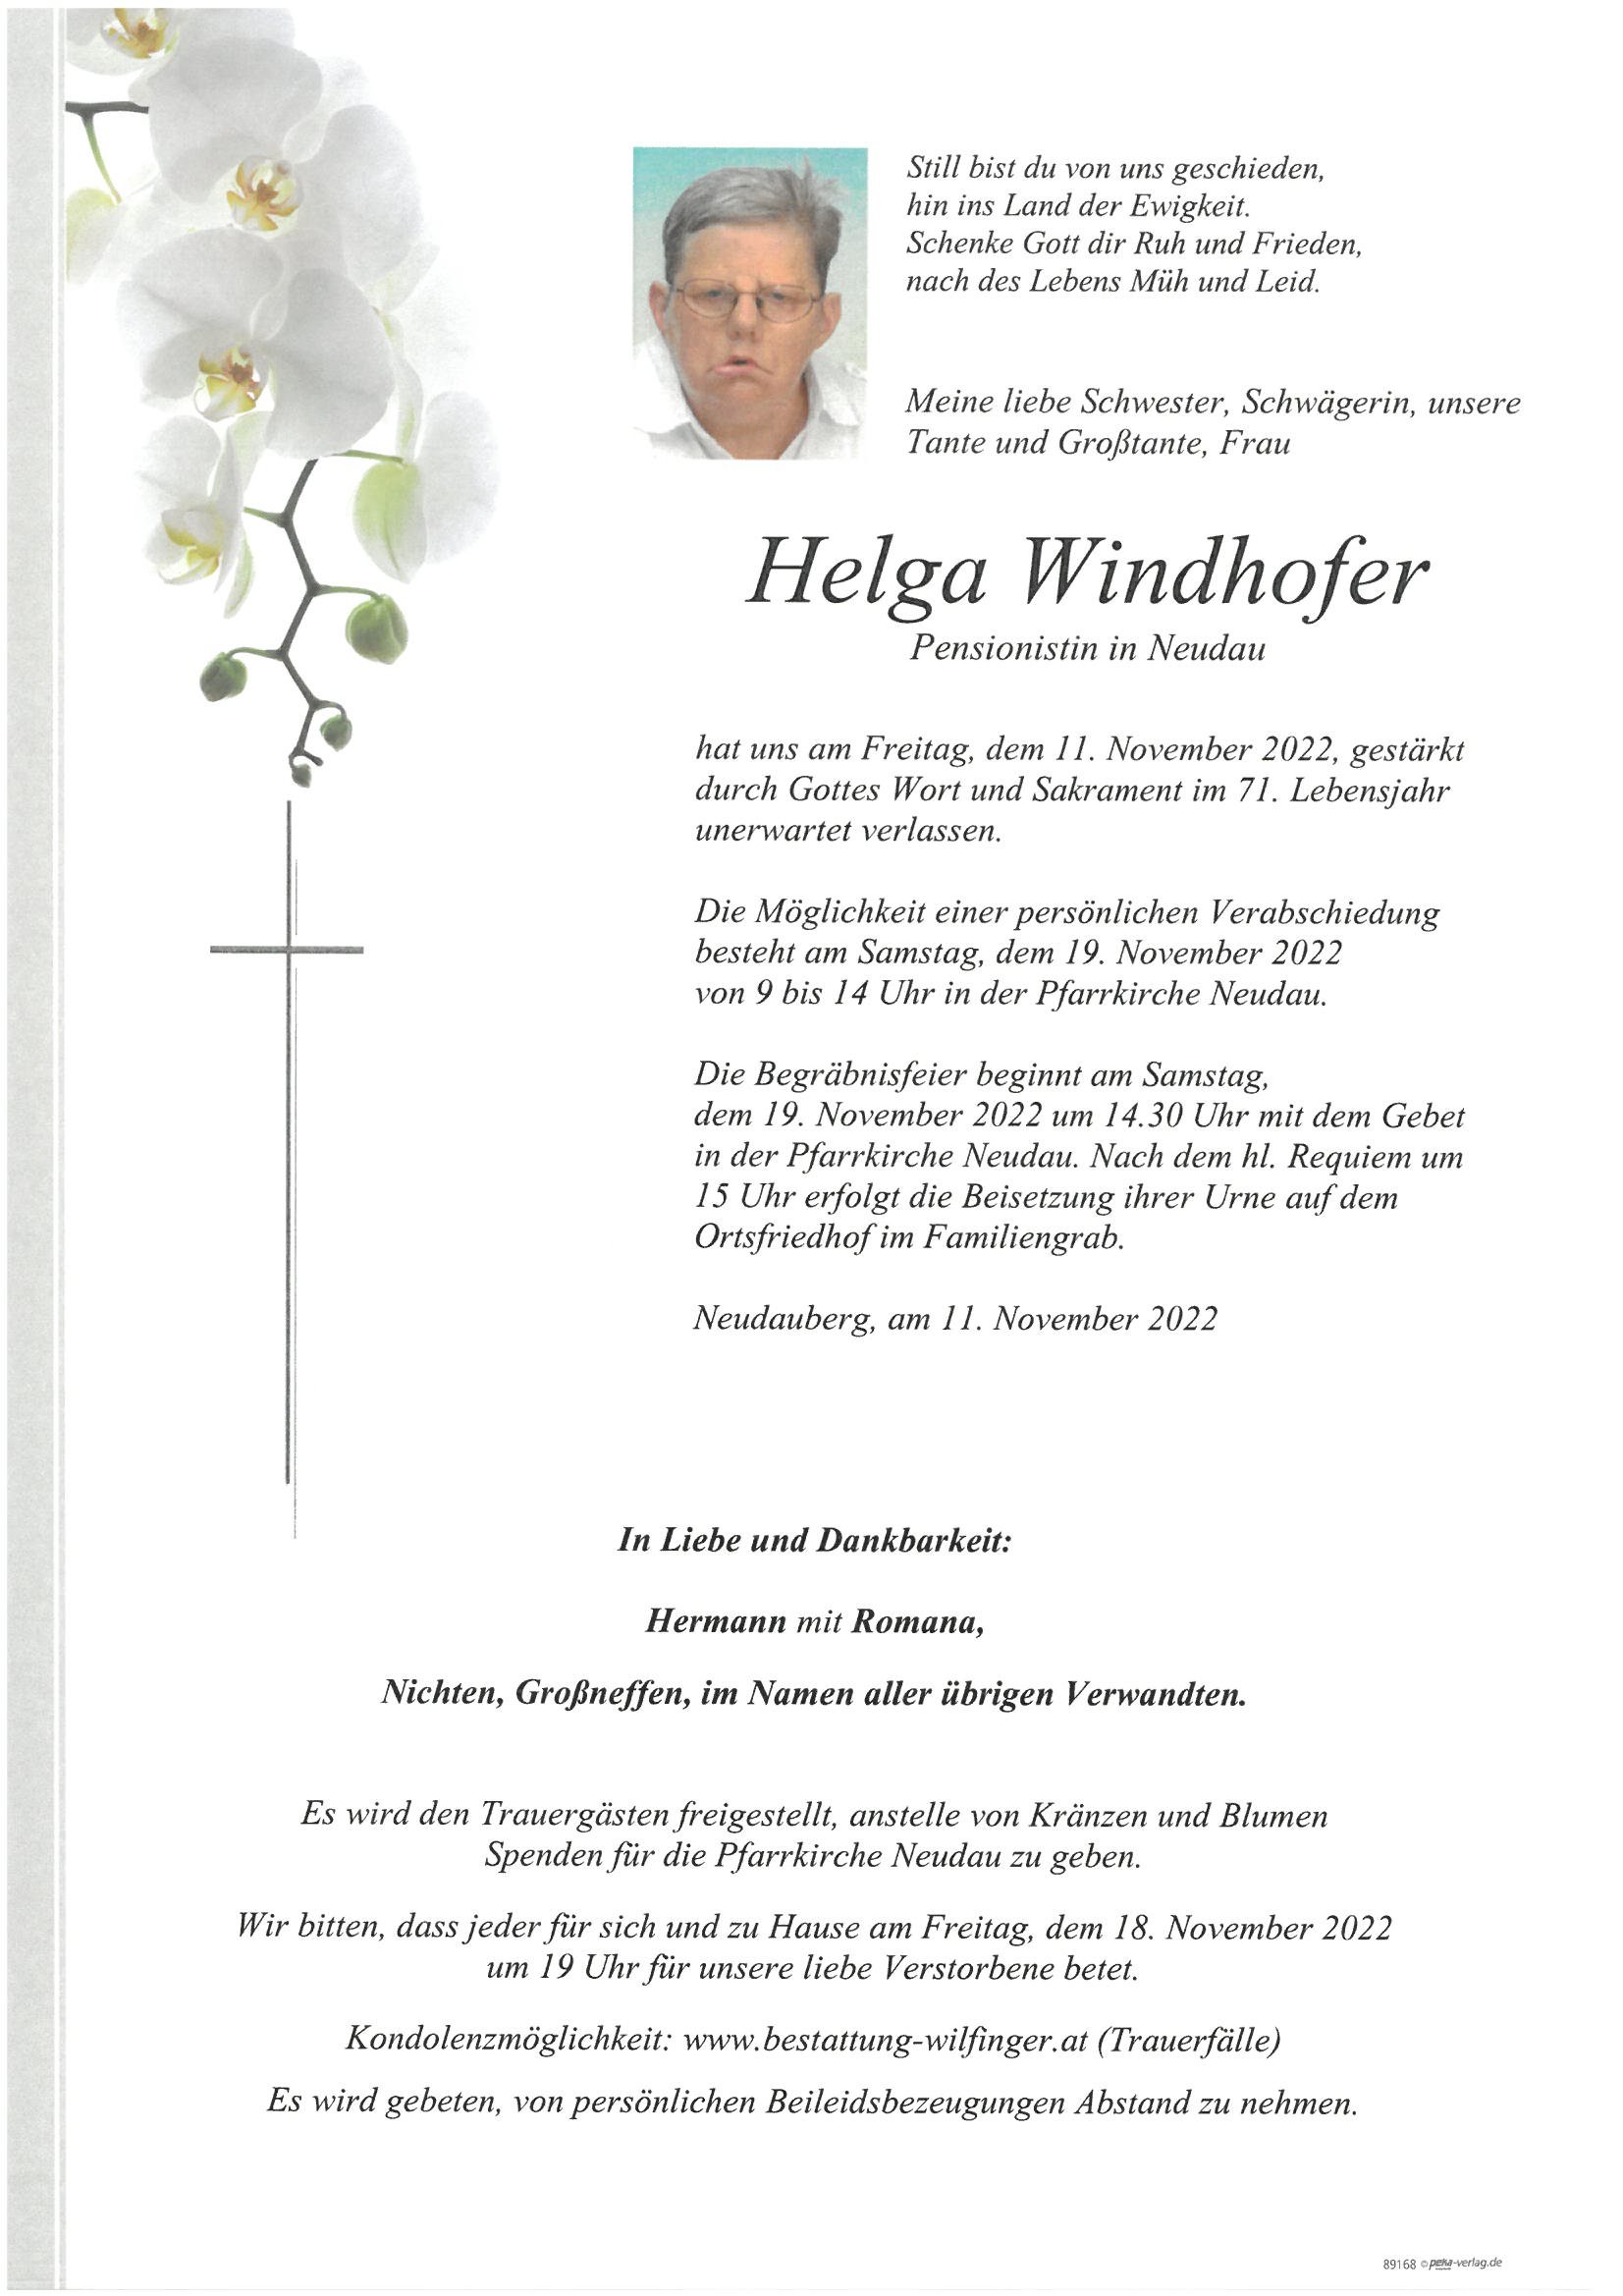 Helga Windhofer, Neudau